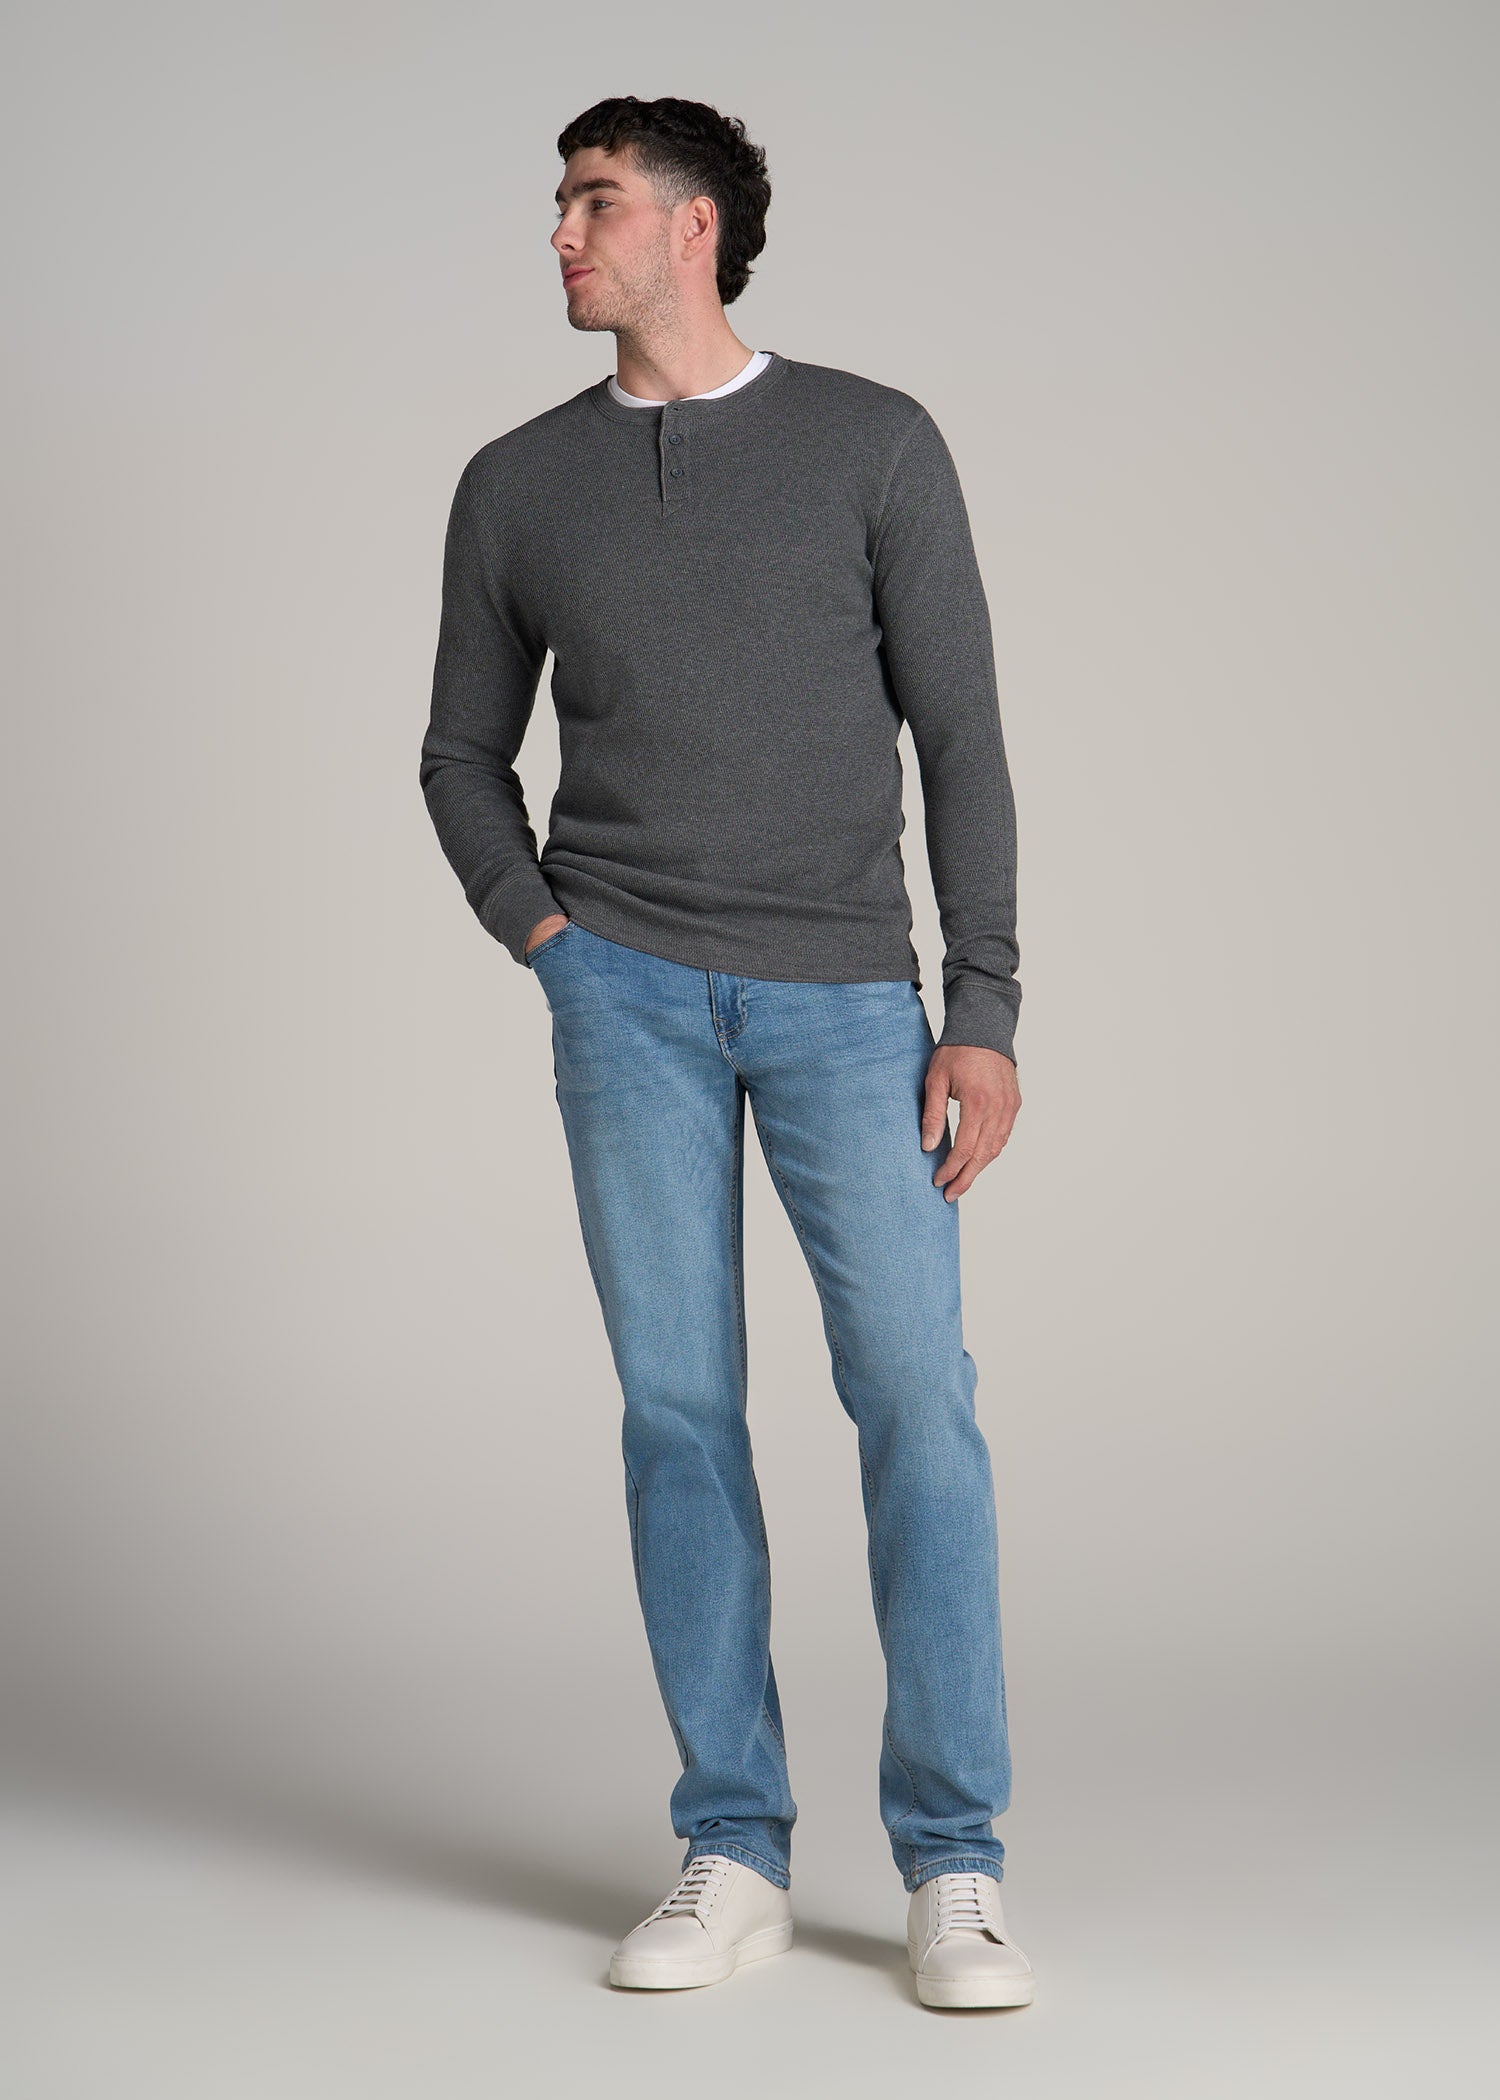 New Fade J1 Tall Men's Jeans | American Tall